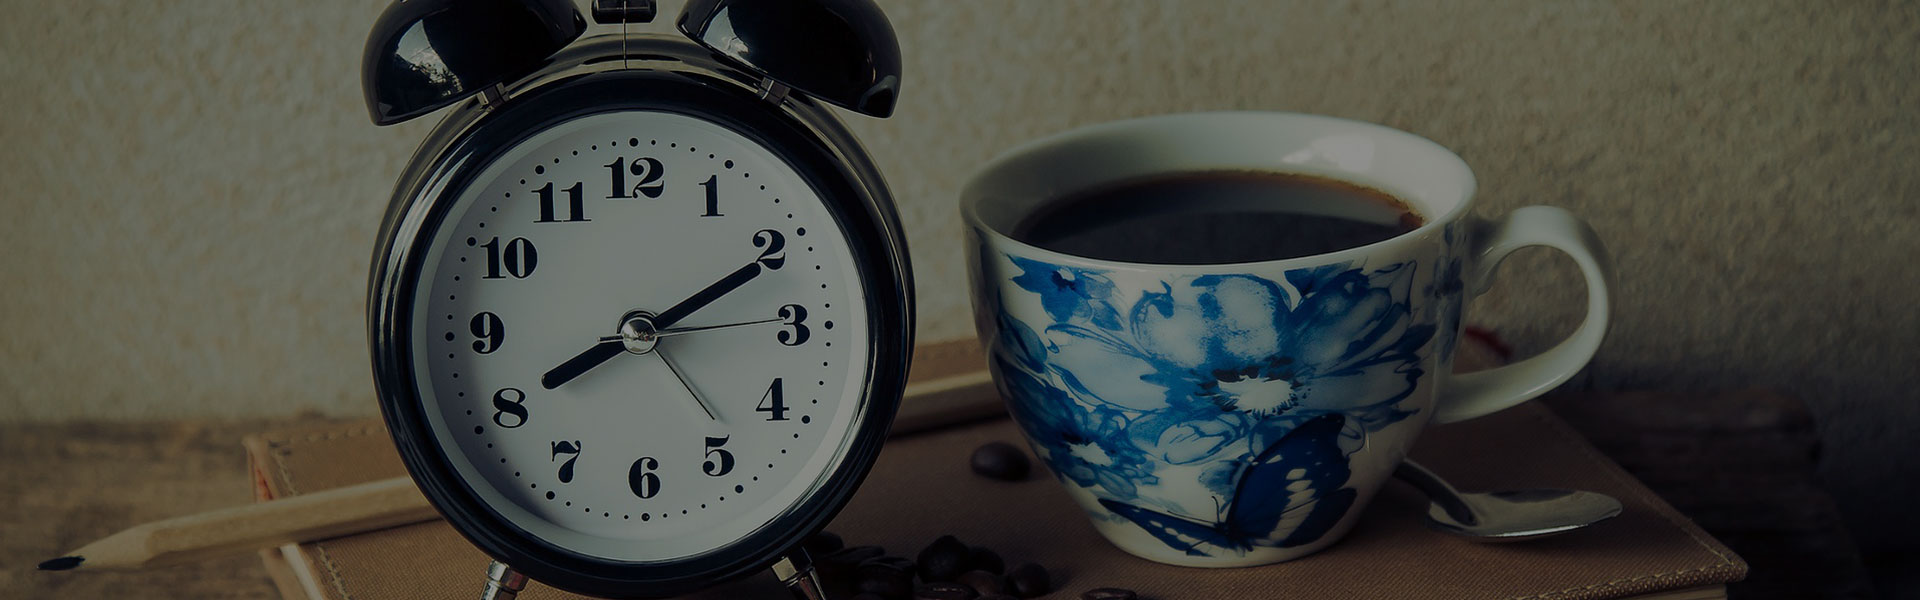 Fotografía detallada de un reloj de mesa junto a una taza de café.